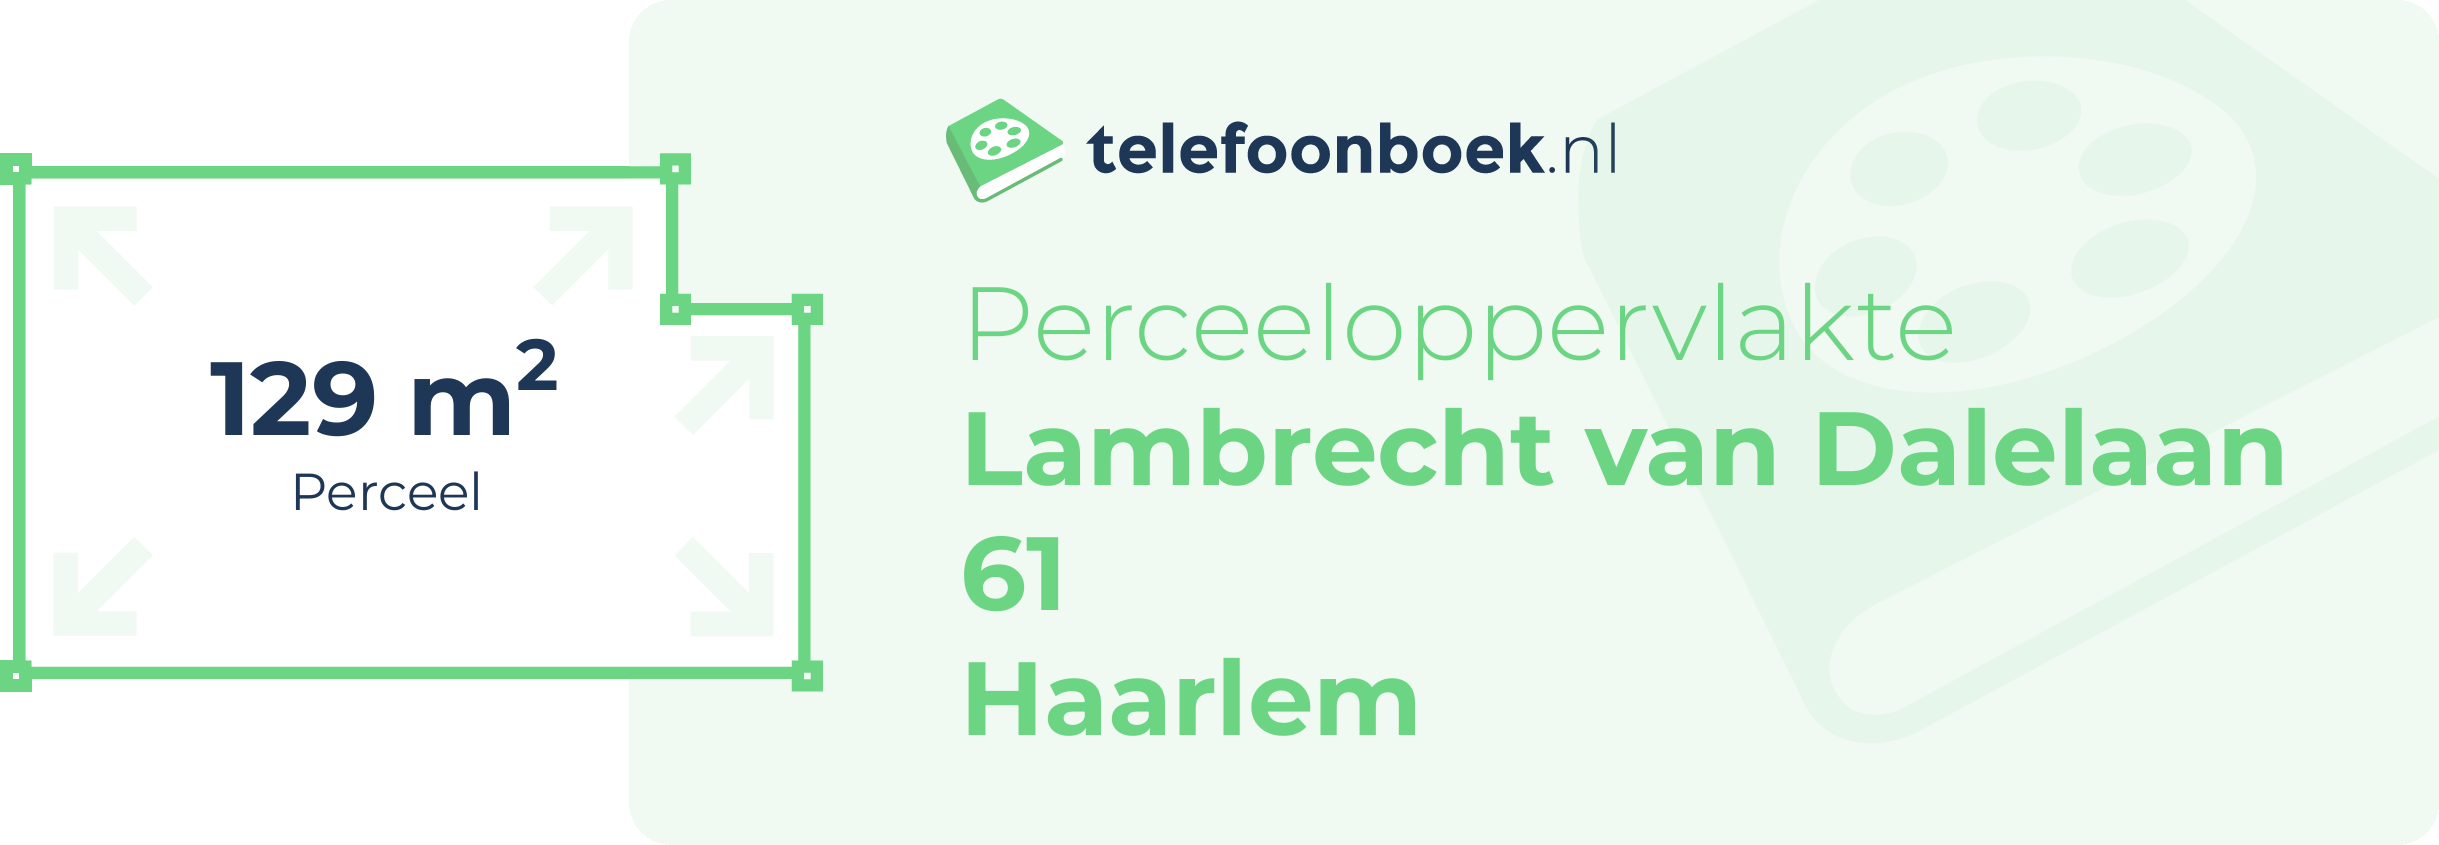 Perceeloppervlakte Lambrecht Van Dalelaan 61 Haarlem